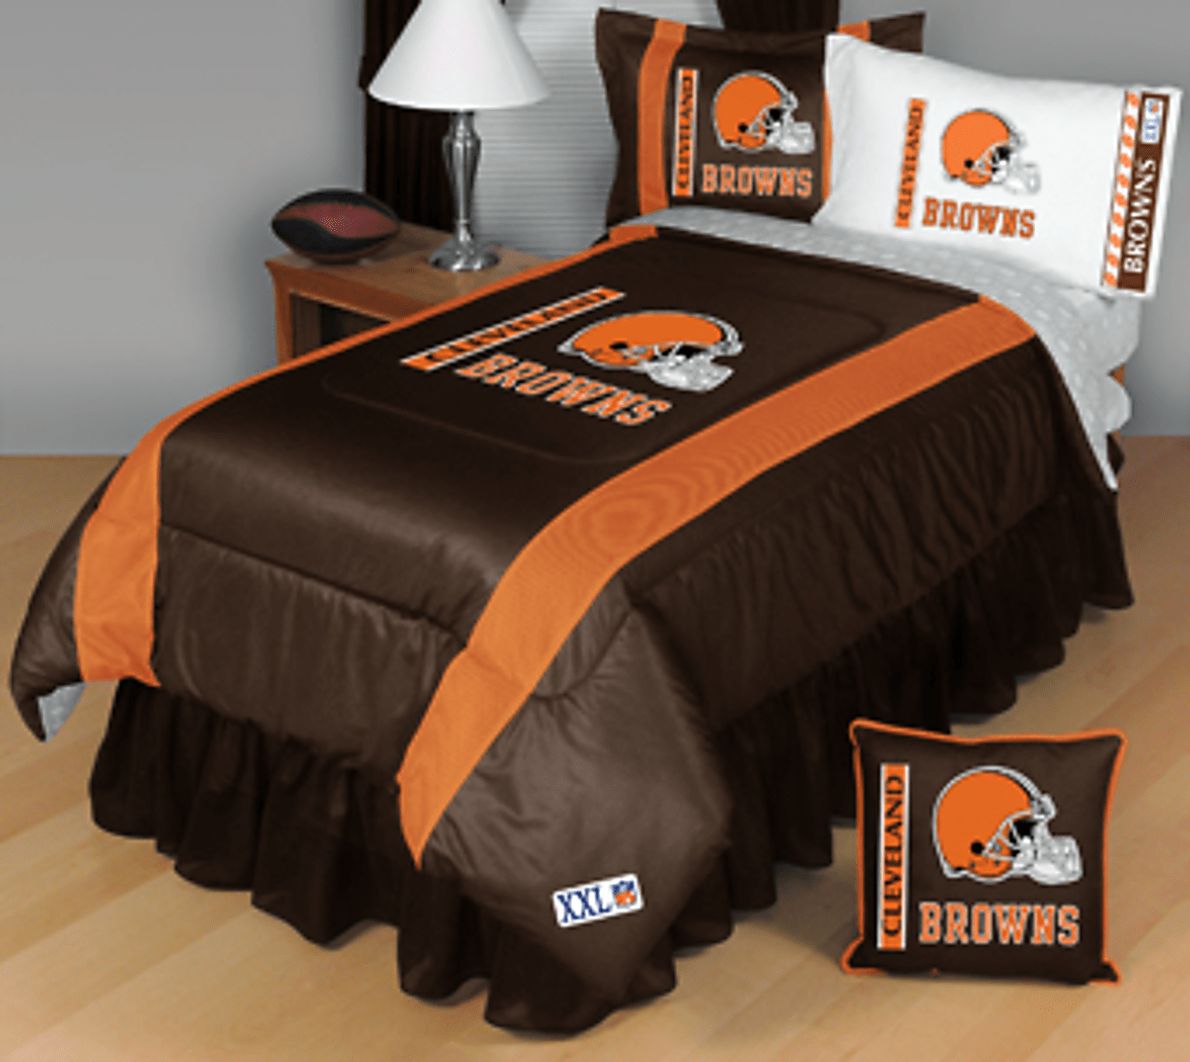 cleveland browns comforter set